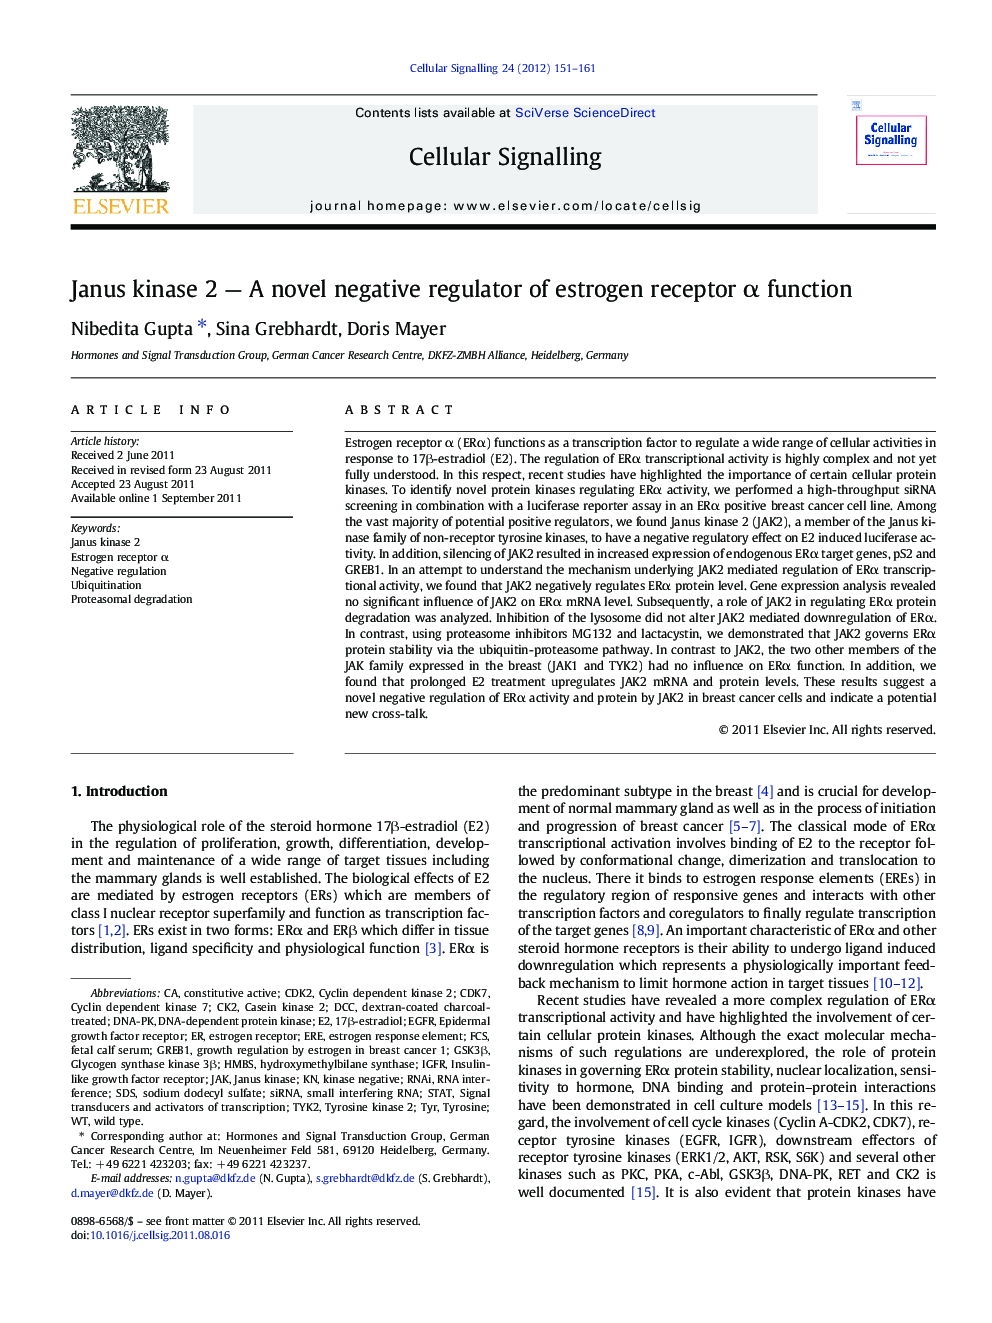 Janus kinase 2 - A novel negative regulator of estrogen receptor Î± function